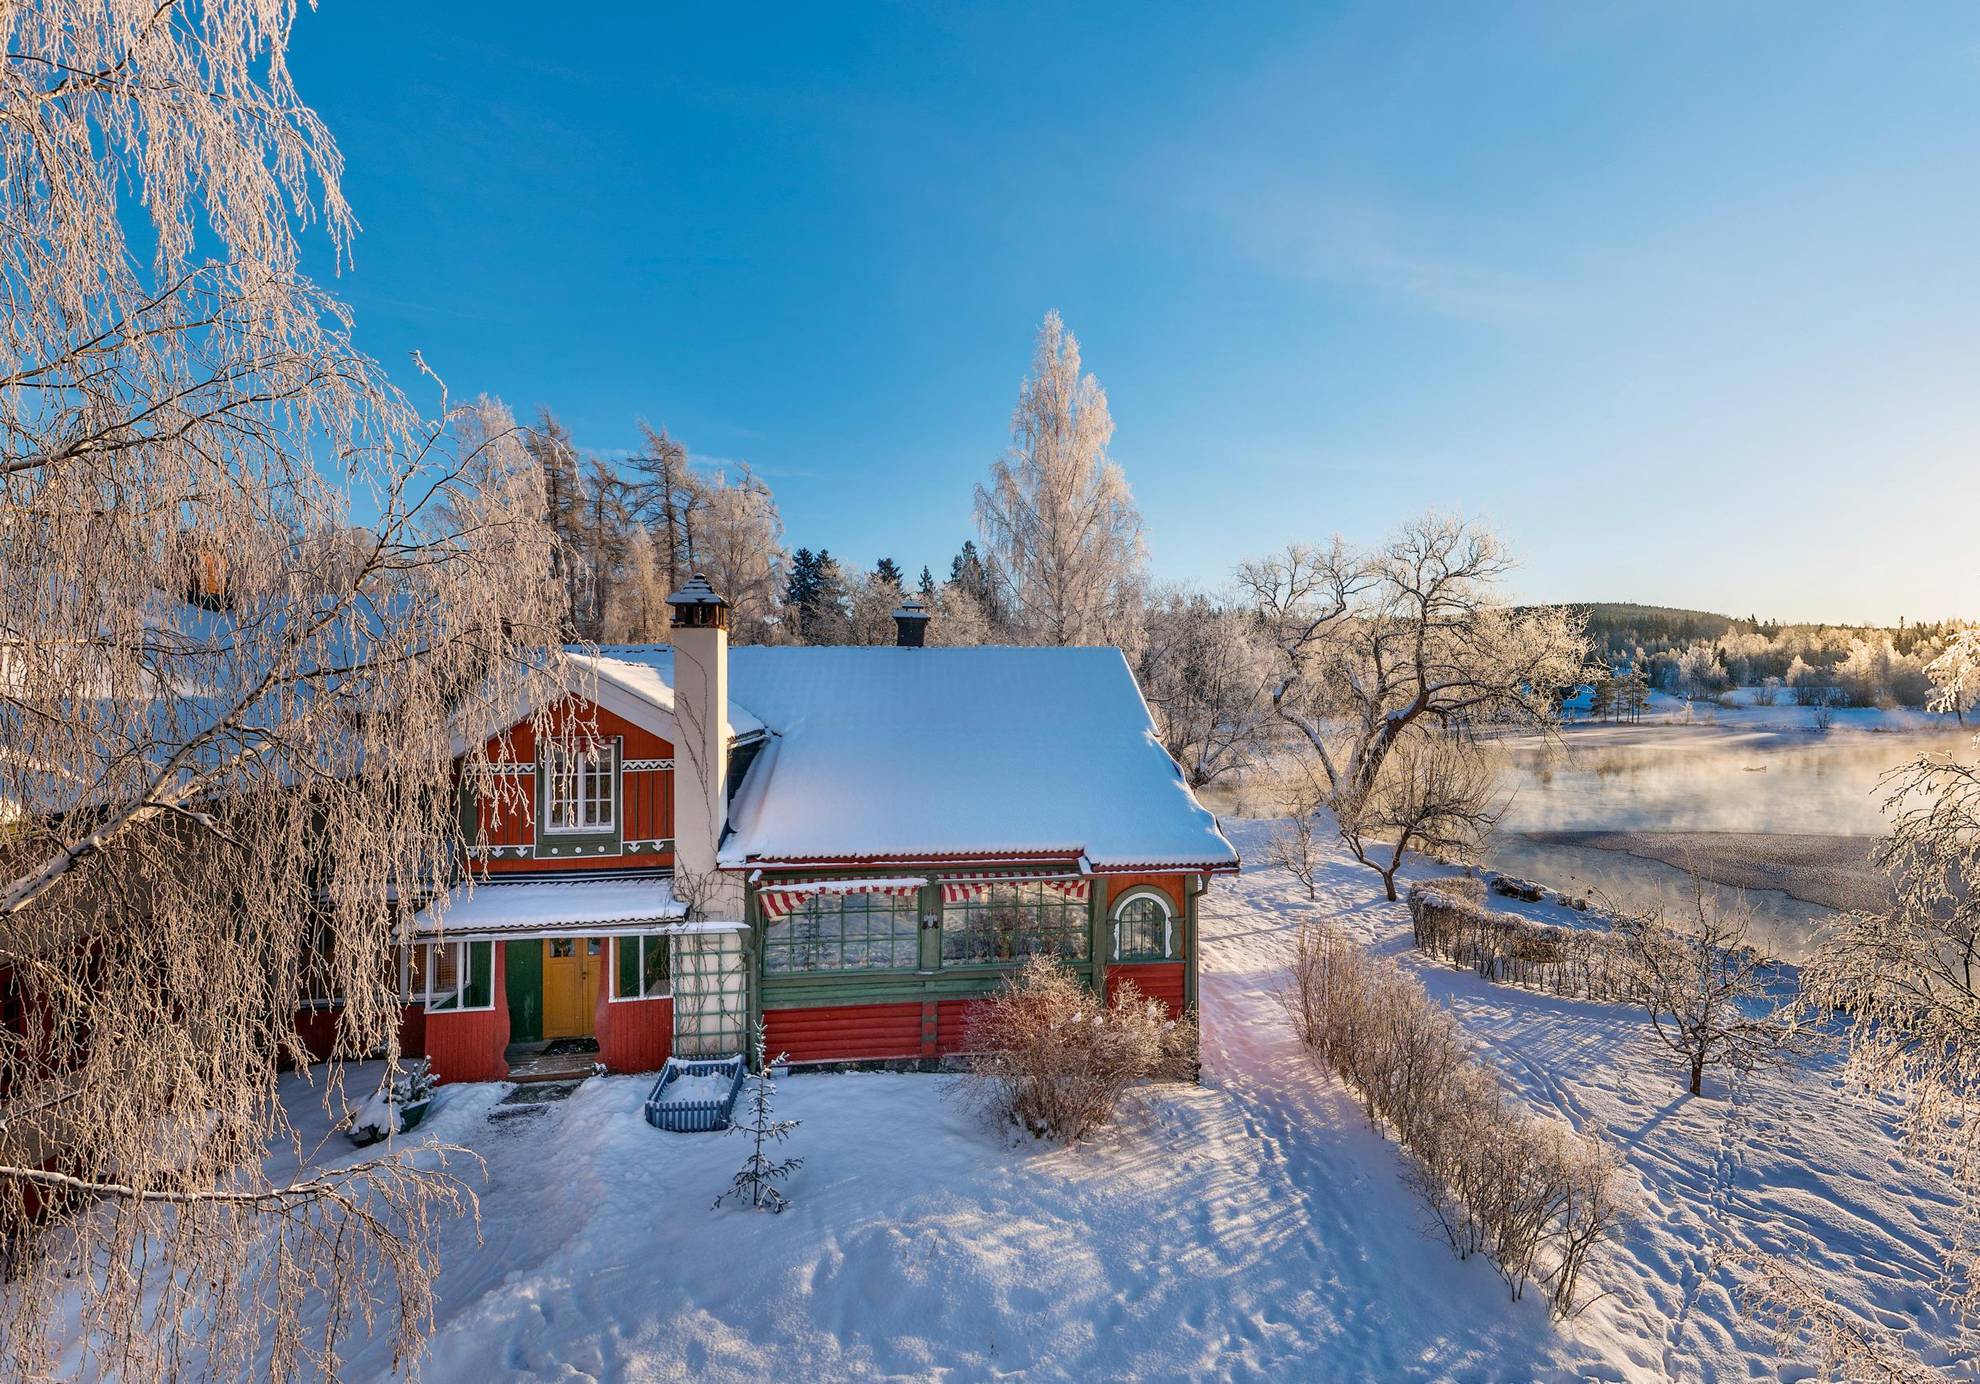 Une maison au bord de l'eau dans un paysage hivernal glacial et enneigé. On voit un lac en arrière-plan.